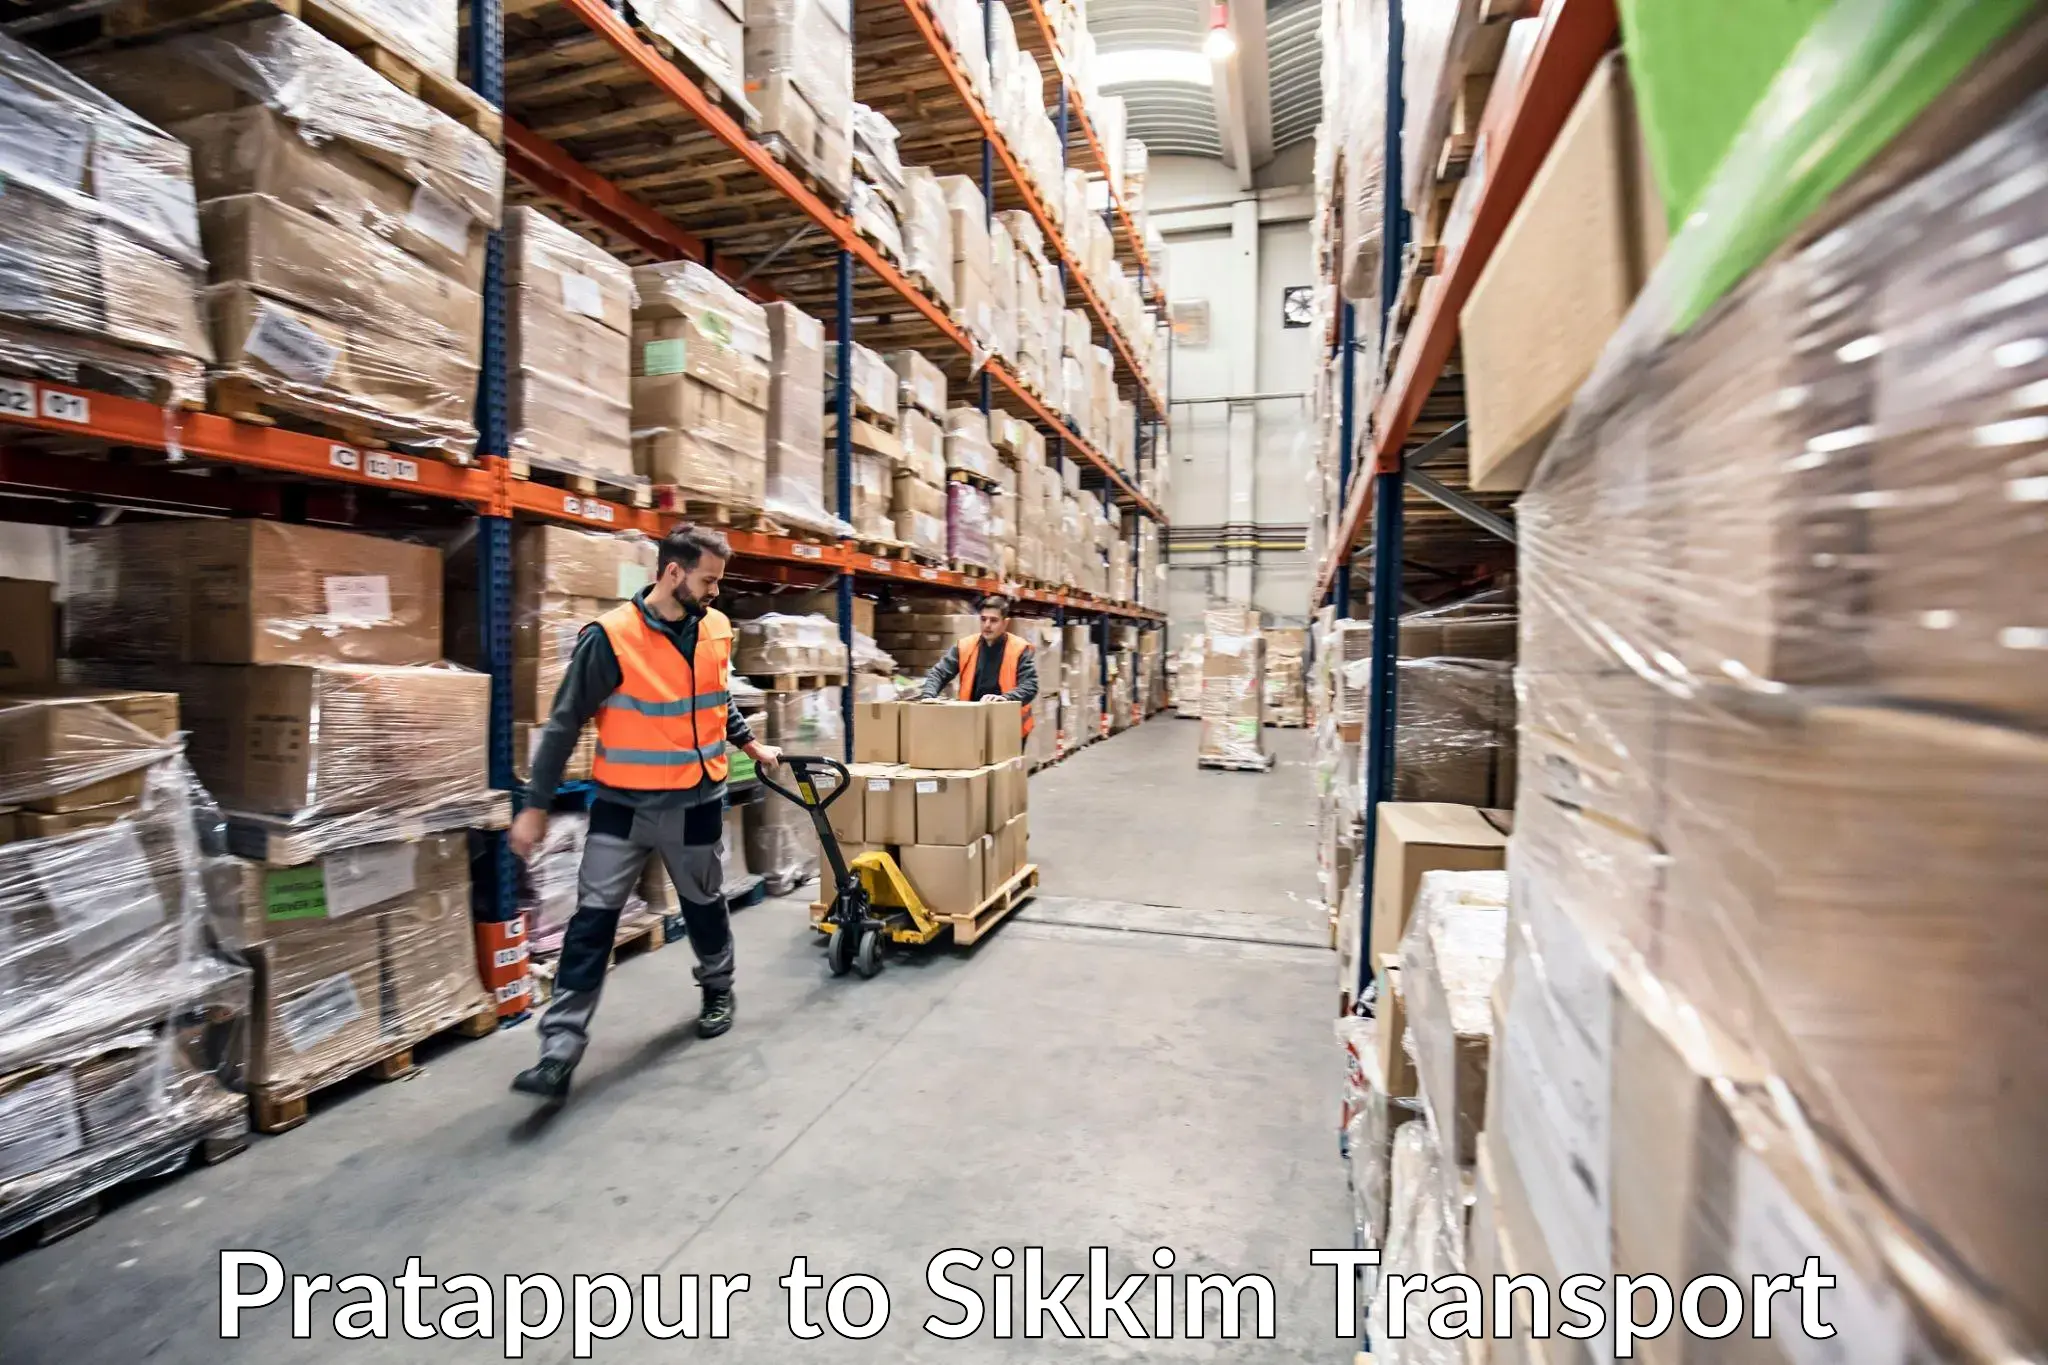 Shipping services Pratappur to Rangpo